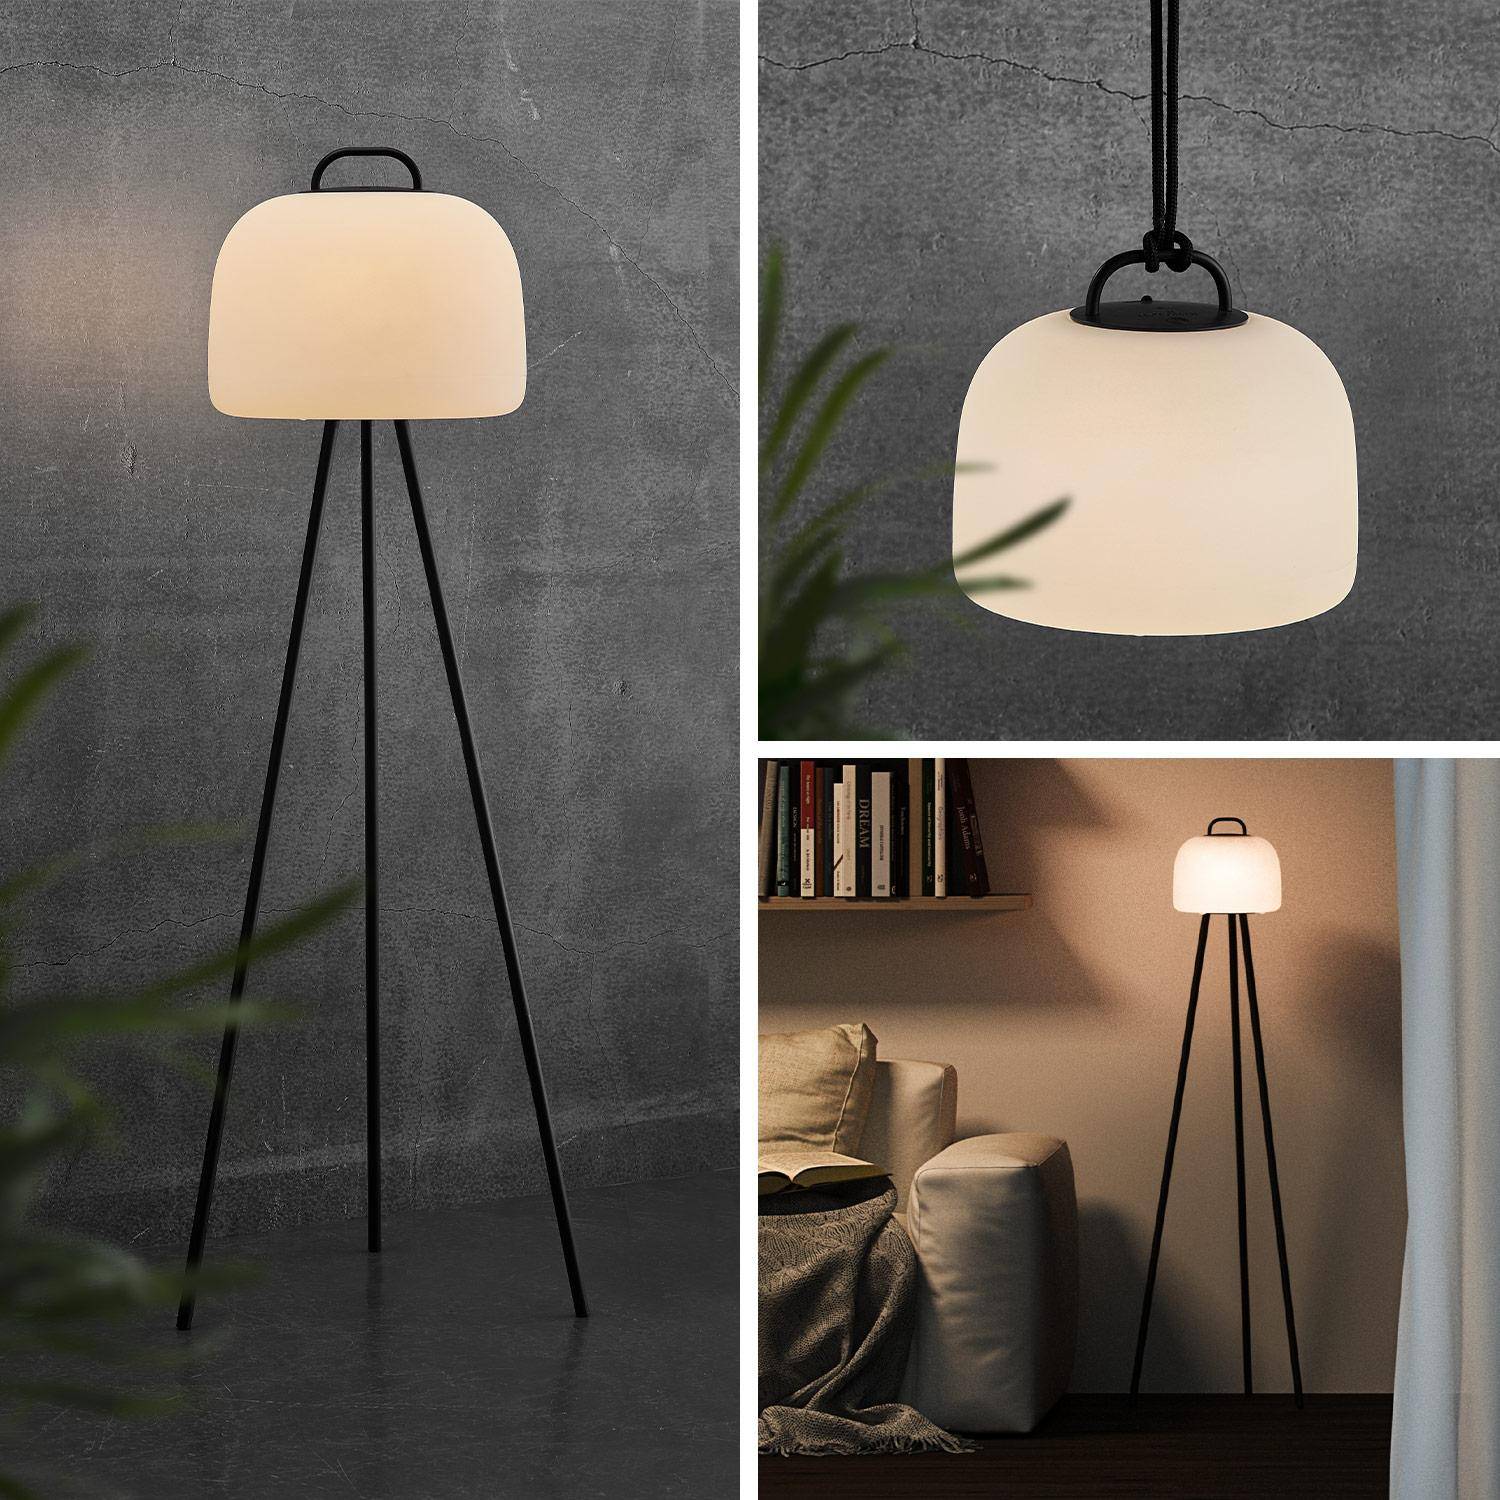 Lampe extérieure LED 3 en 1 – TRIPADA XL– Lampe extérieure en plastique, Ø36cm, avec trépied 1m et corde Photo1